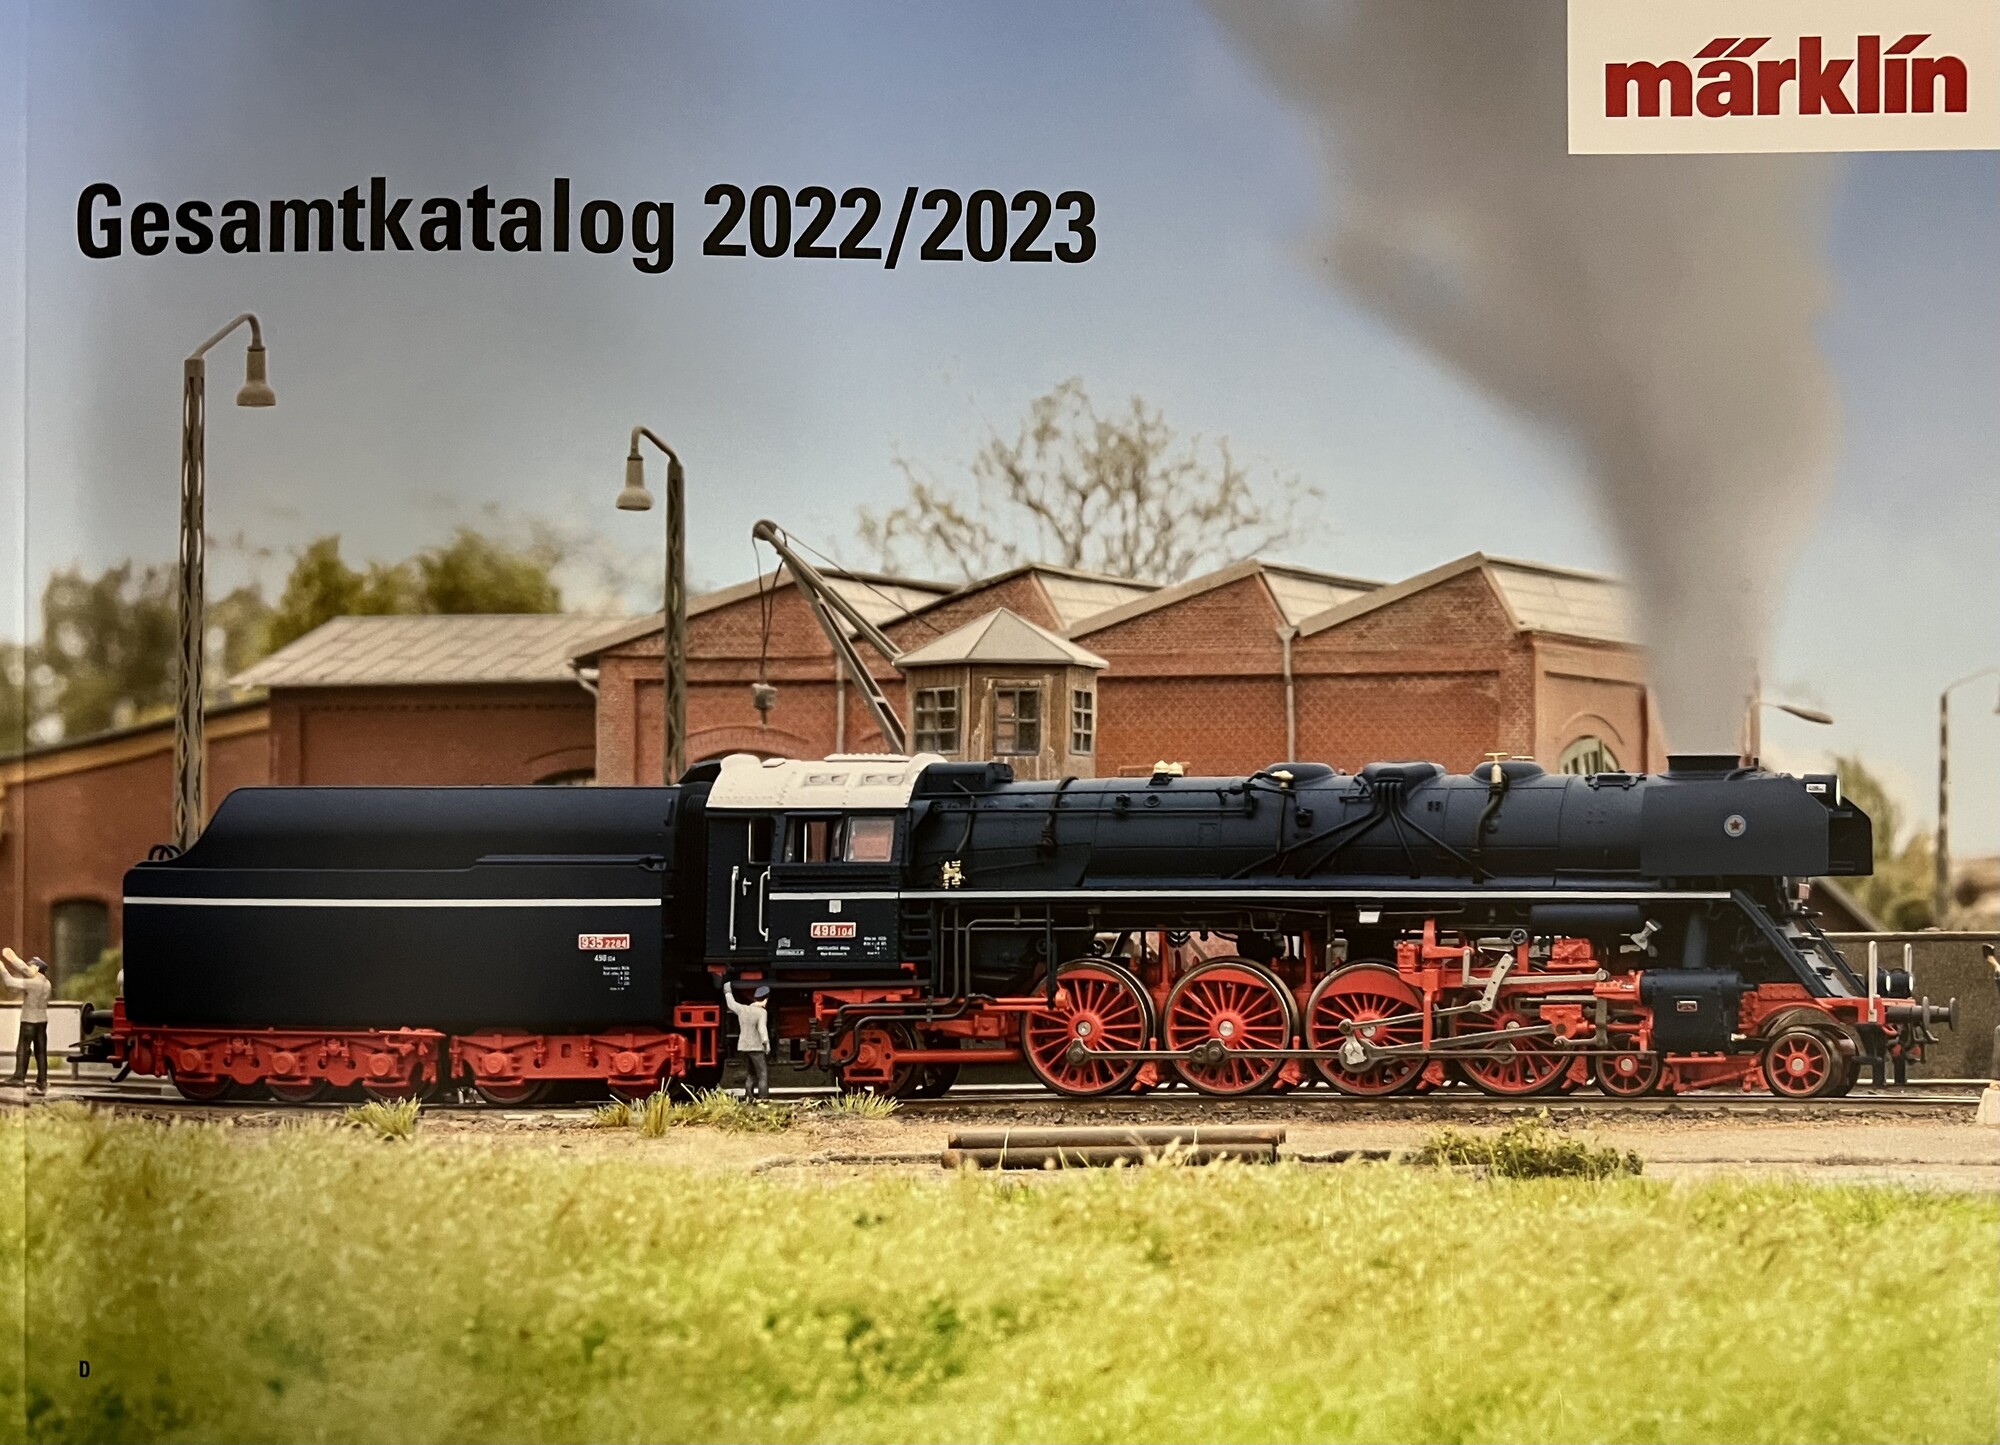 Märklin 15724 Märklin Katalog 2022/2023 DE Märklin Katalog 2022/2023 DE